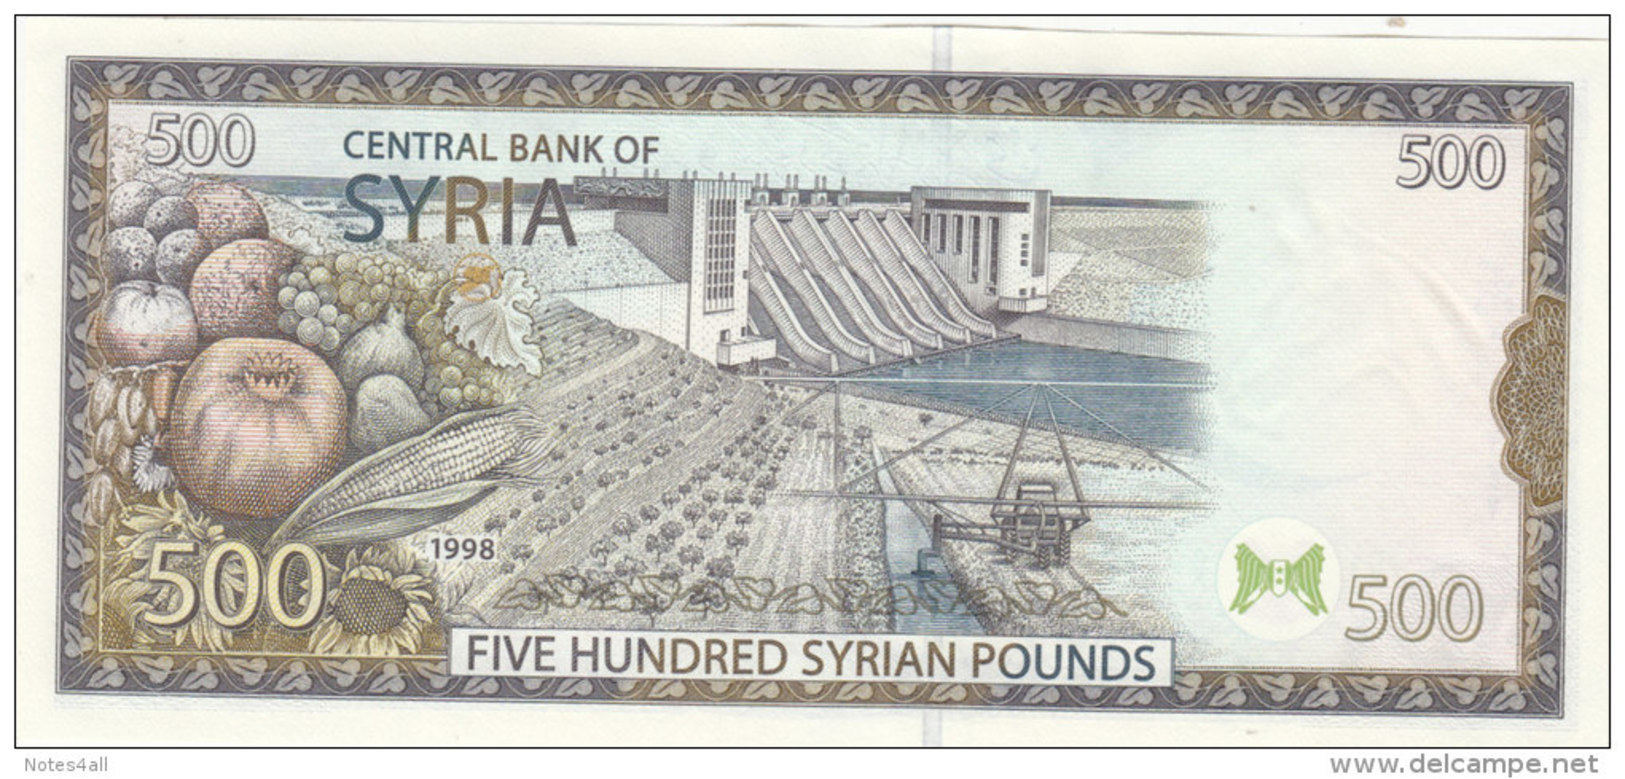 SYRIA 500 LIRA POUNDS 1998 P-110 UNC */* - Syria